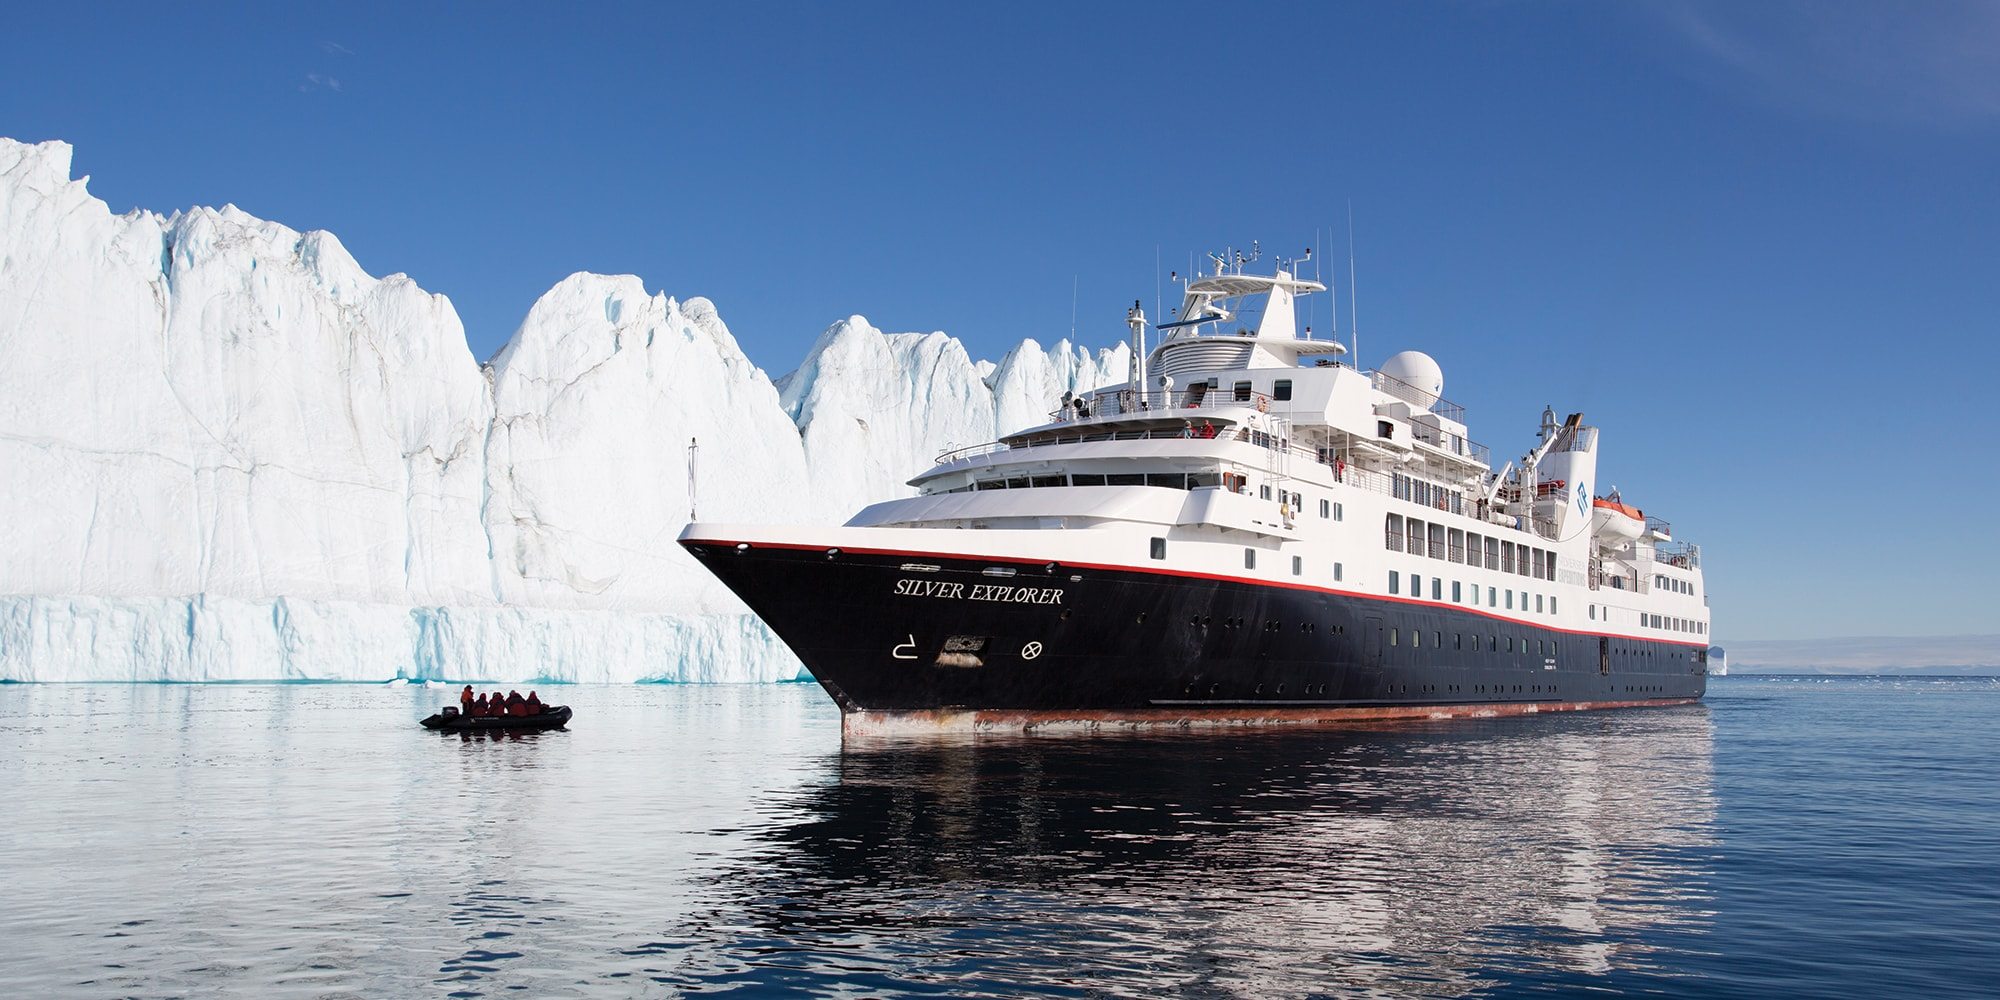 falkland islands cruise ship ban